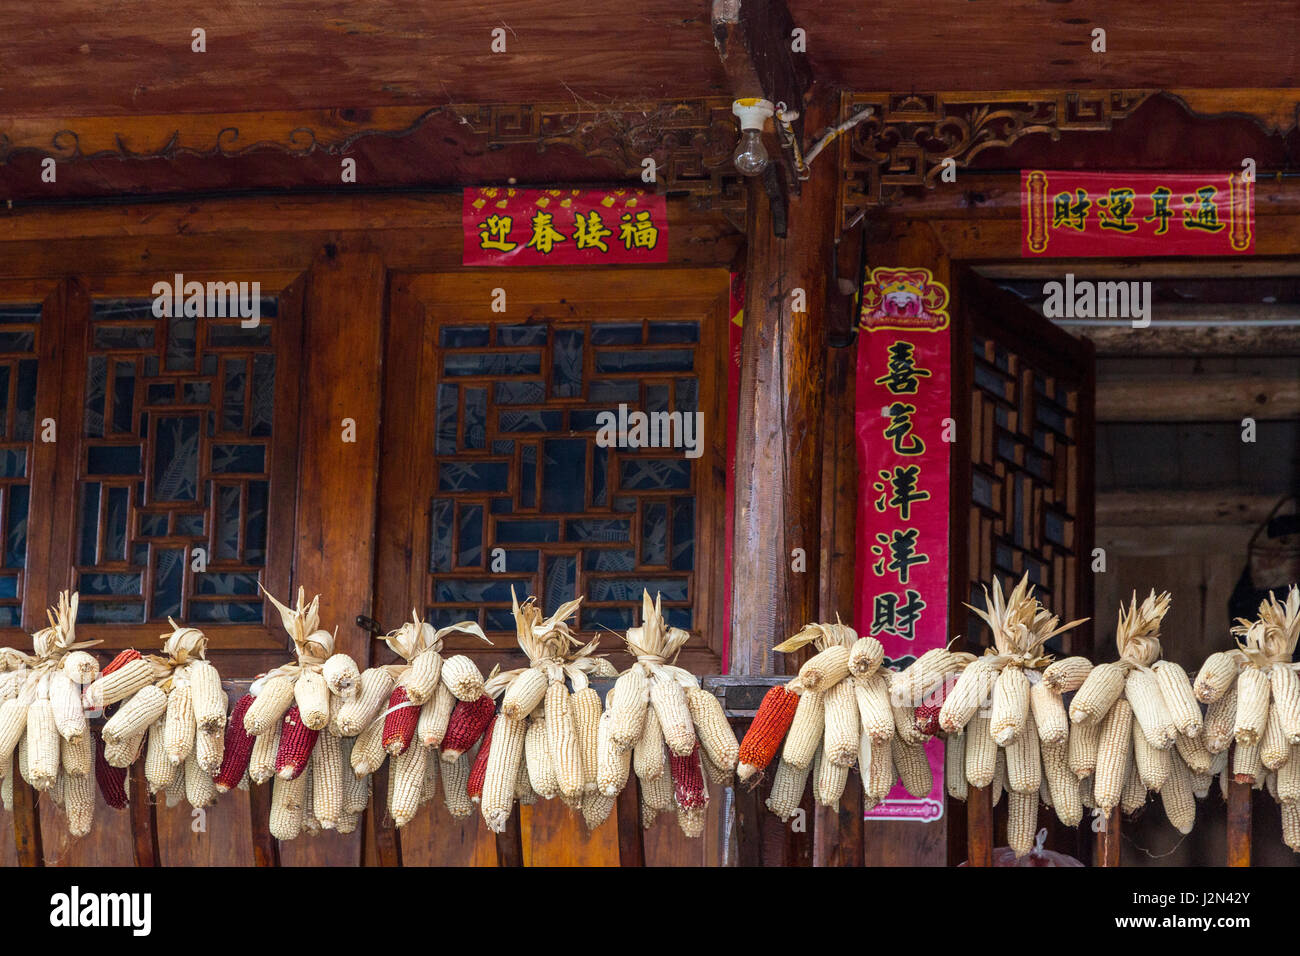 Matang, einem Gejia Dorf in Guizhou, China.  Ähren hängen am Geländer am Eingang zum Haus.  Frühling Festival (Neujahr) führt einen Bildlauf um Tür. Stockfoto